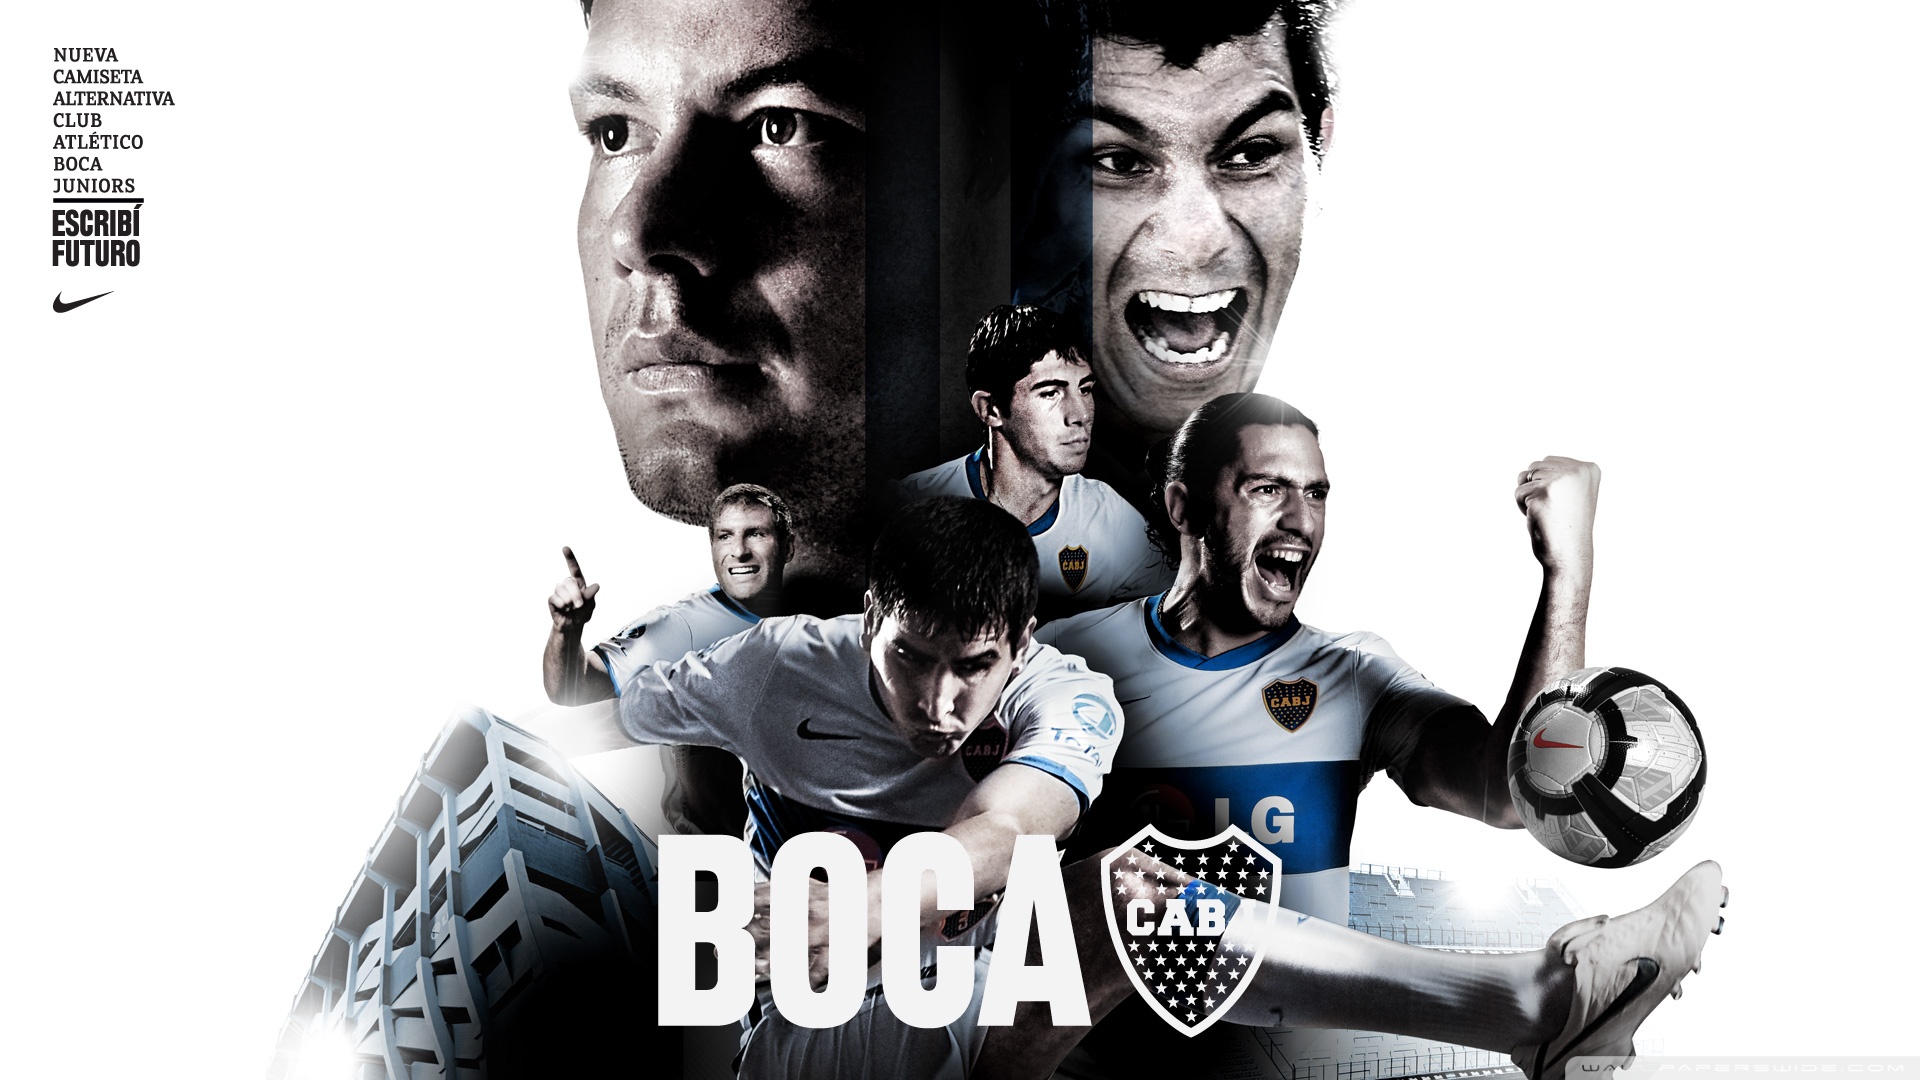 Boca Juniors (720px - 1280px)  Fotos de boca, Boca juniors, Boca juniors  imagenes